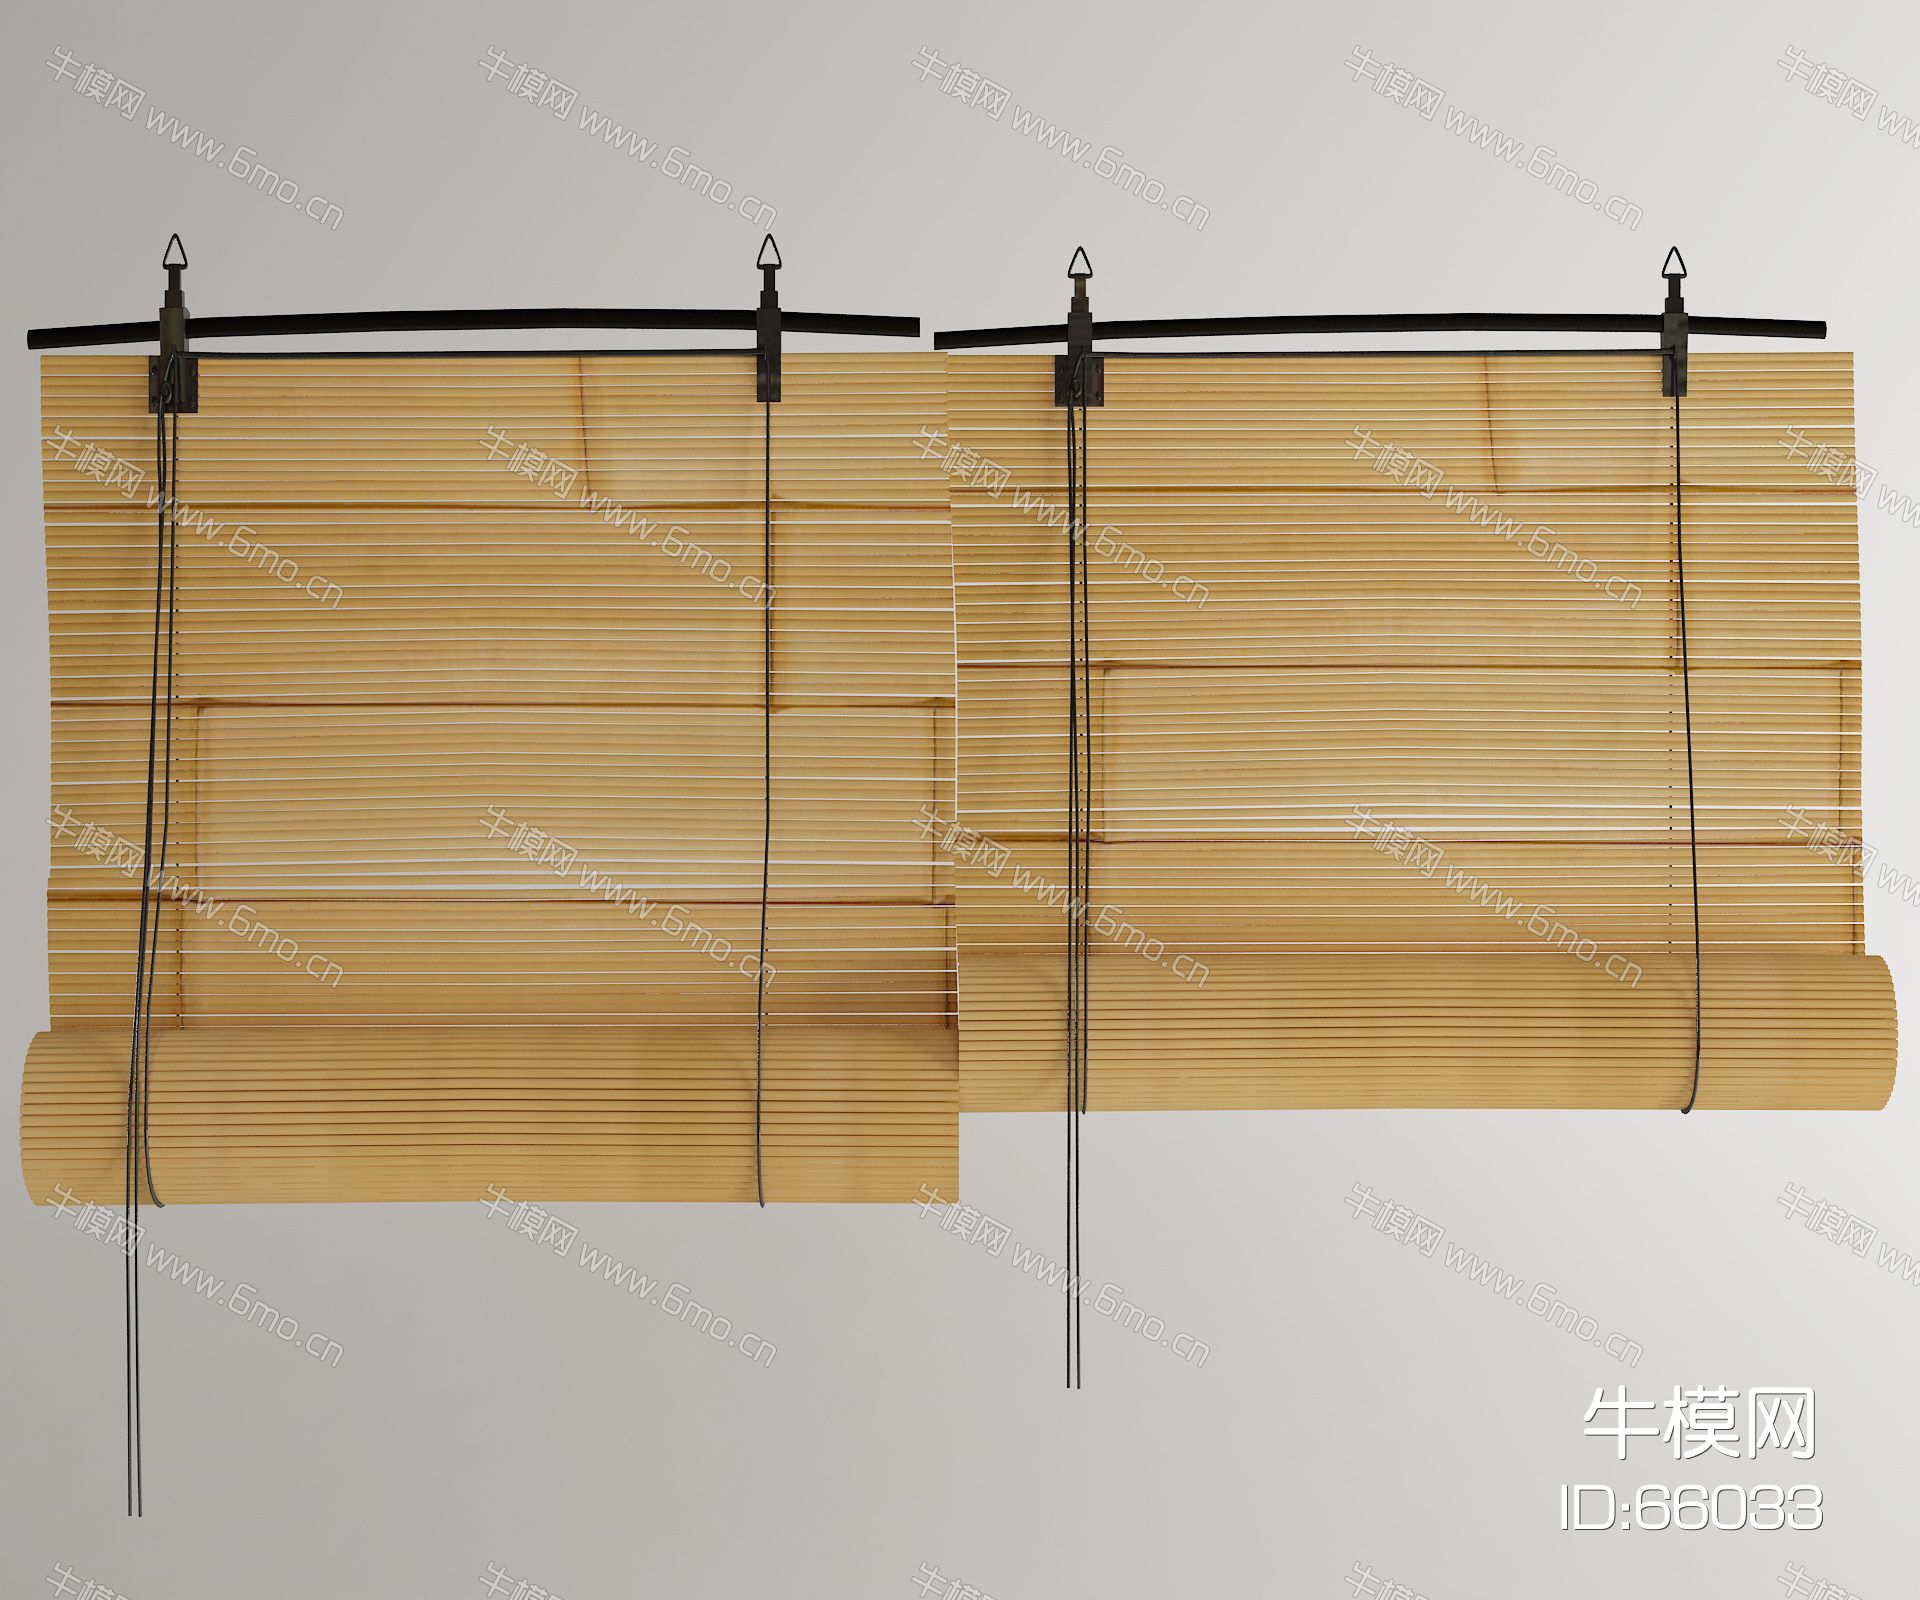 的现代窗帘效果图素材免费下载,本作品主题是现代百叶帘 竹帘3d模型